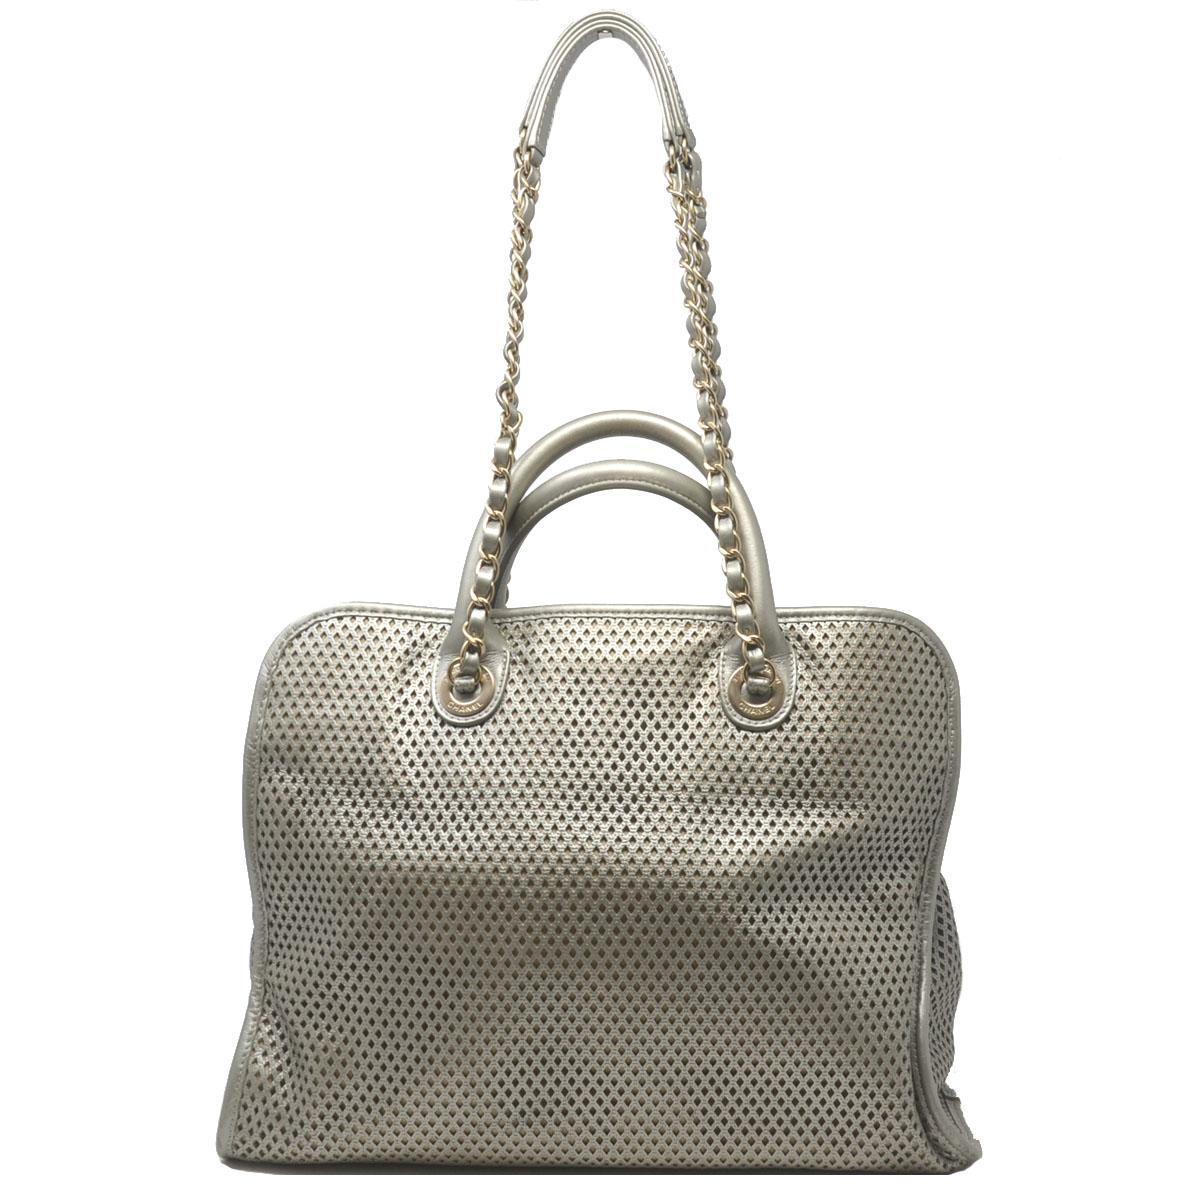 gray leather tote handbag